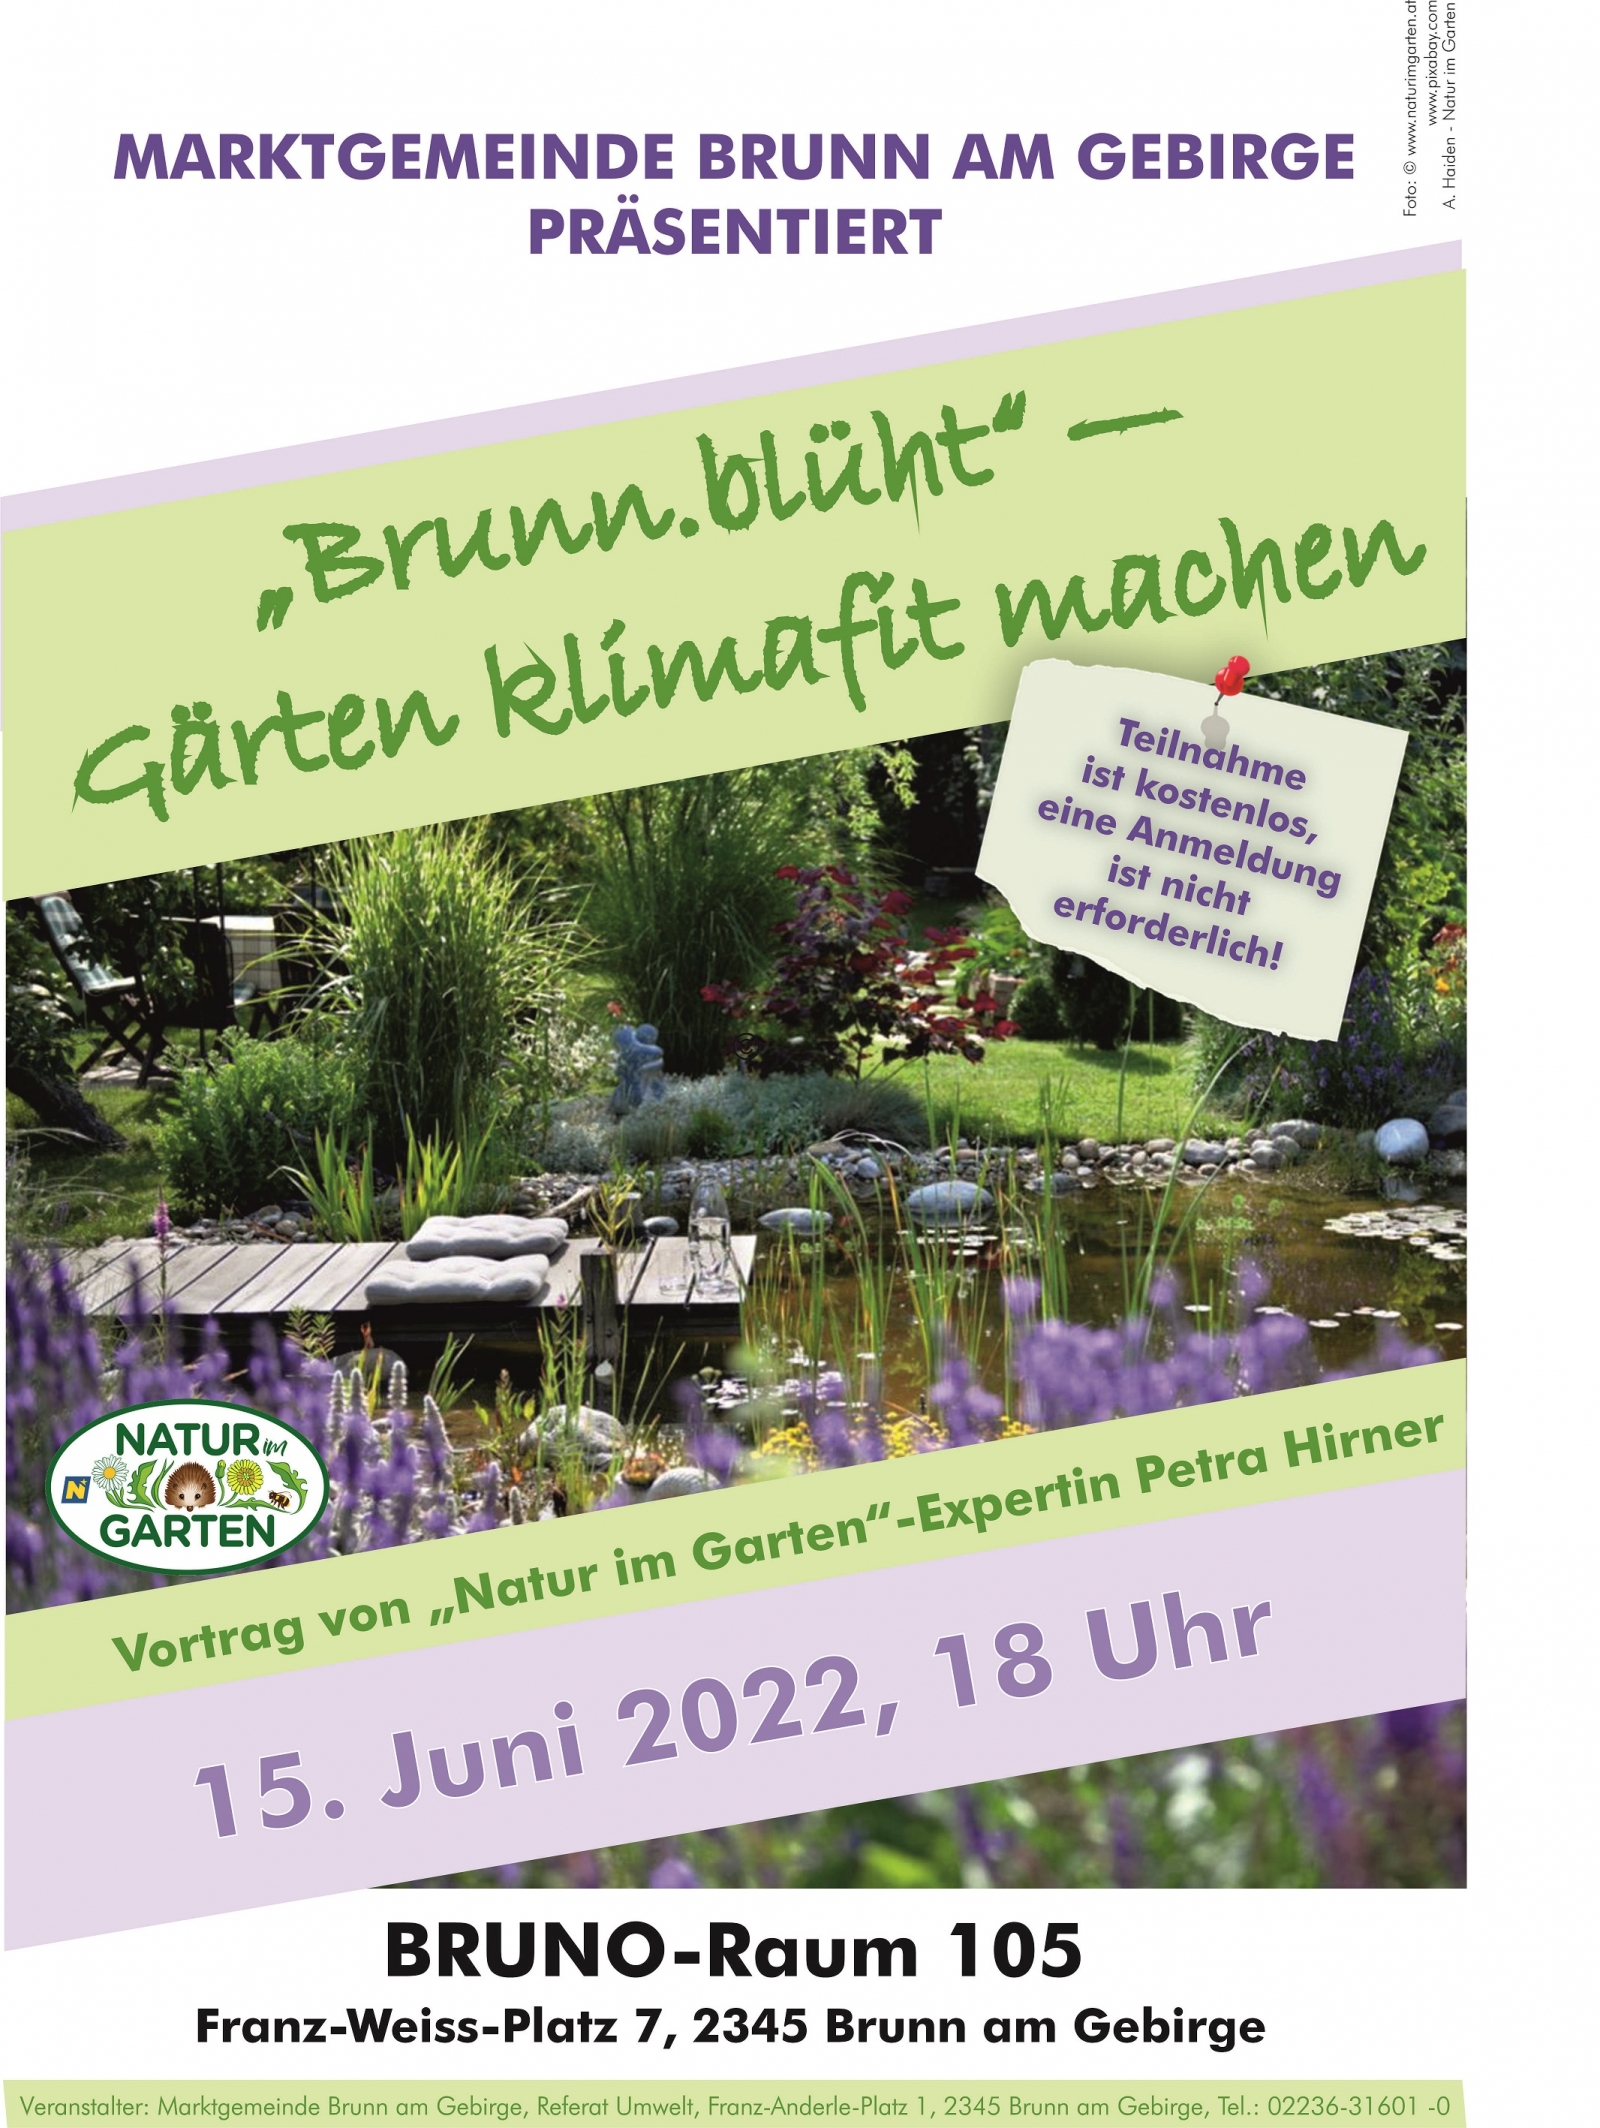 Aktion Brunn.blüht - Gärten klimafit machen